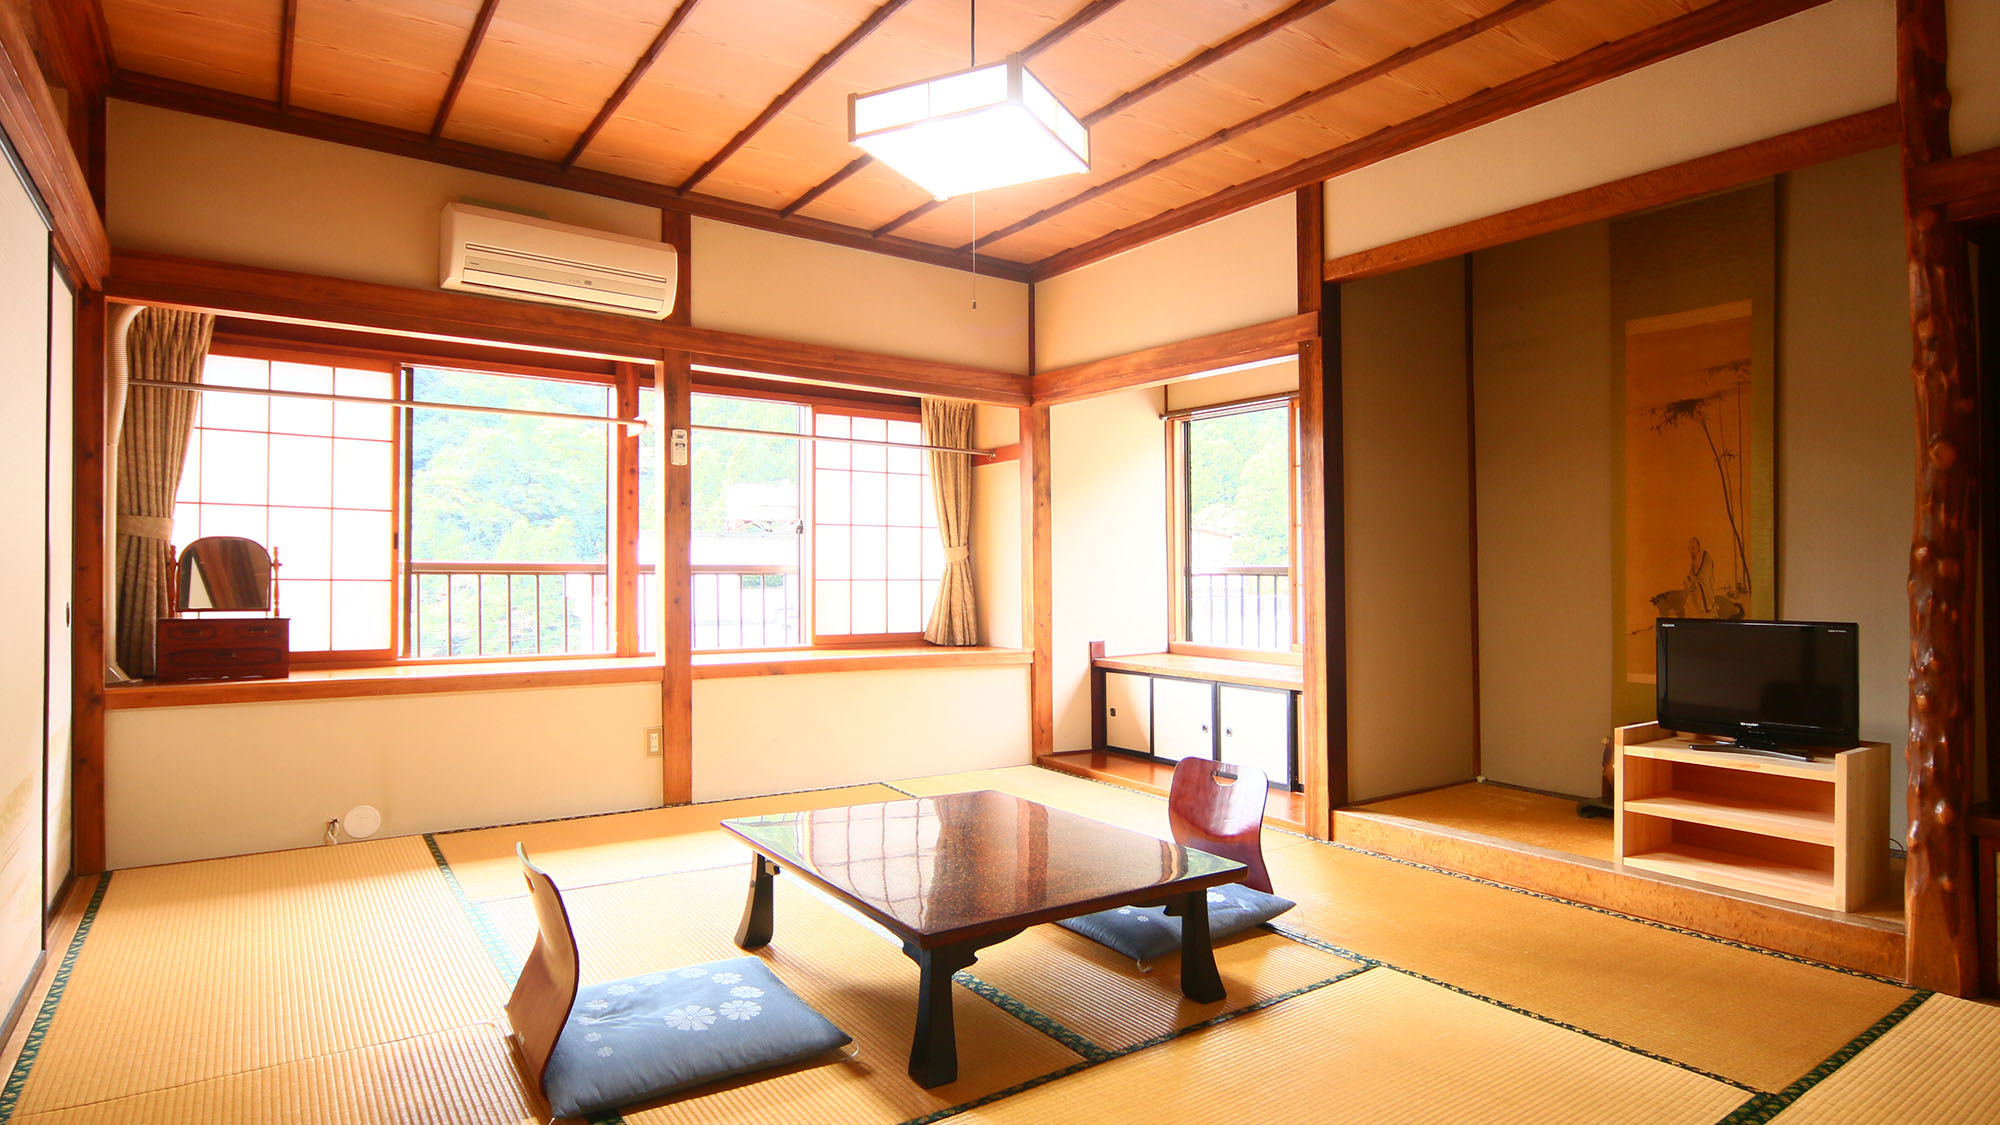 客室お1人様和室ゆっくりと寛げる日本間。ふすまで仕切られております